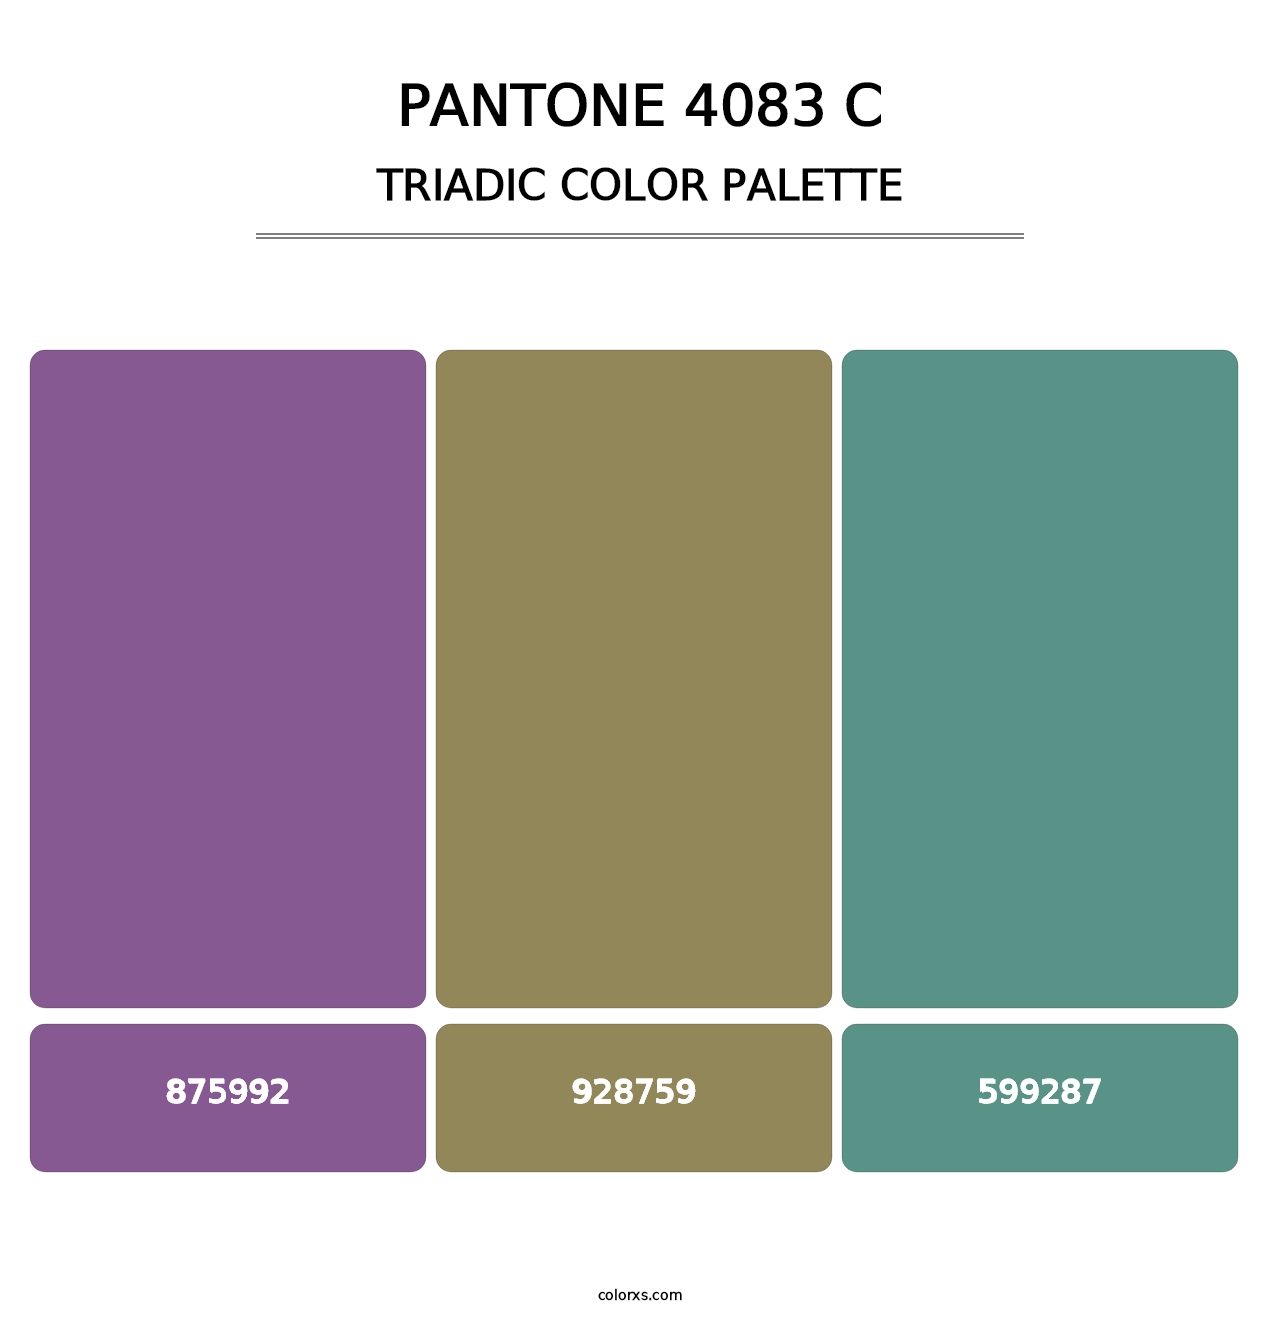 PANTONE 4083 C - Triadic Color Palette